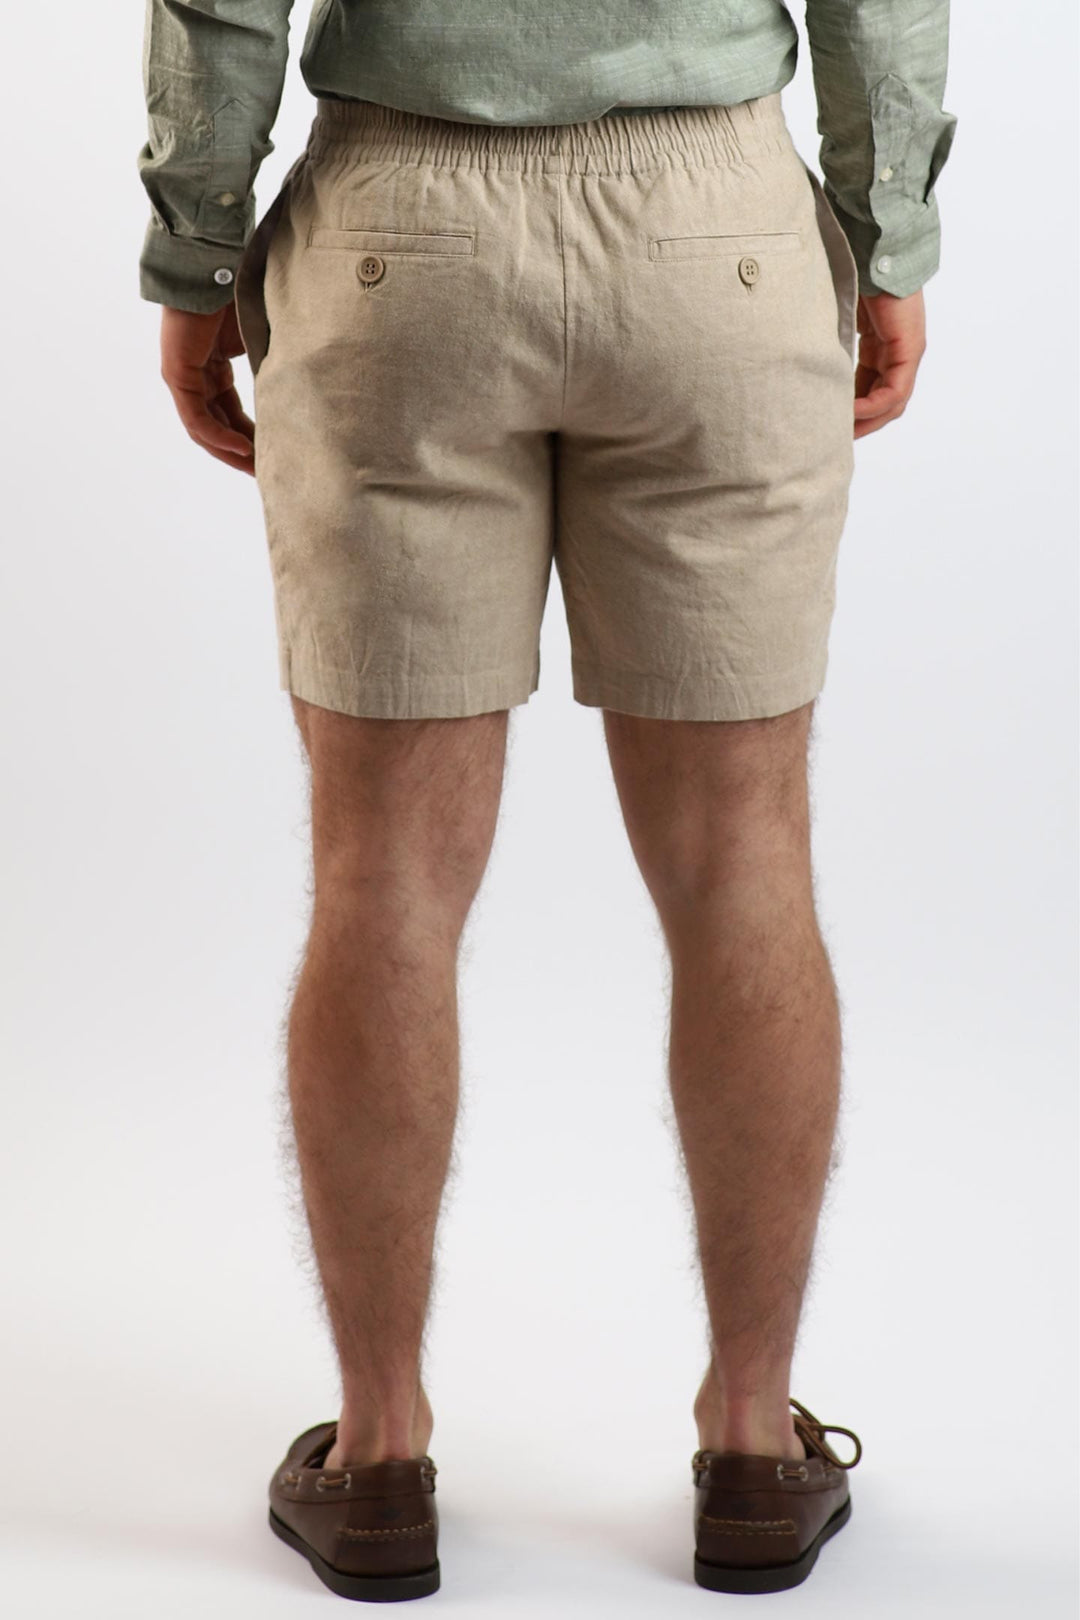 Buy Khaki Linen Short for Short Men | Ash & Erie   Linen Short